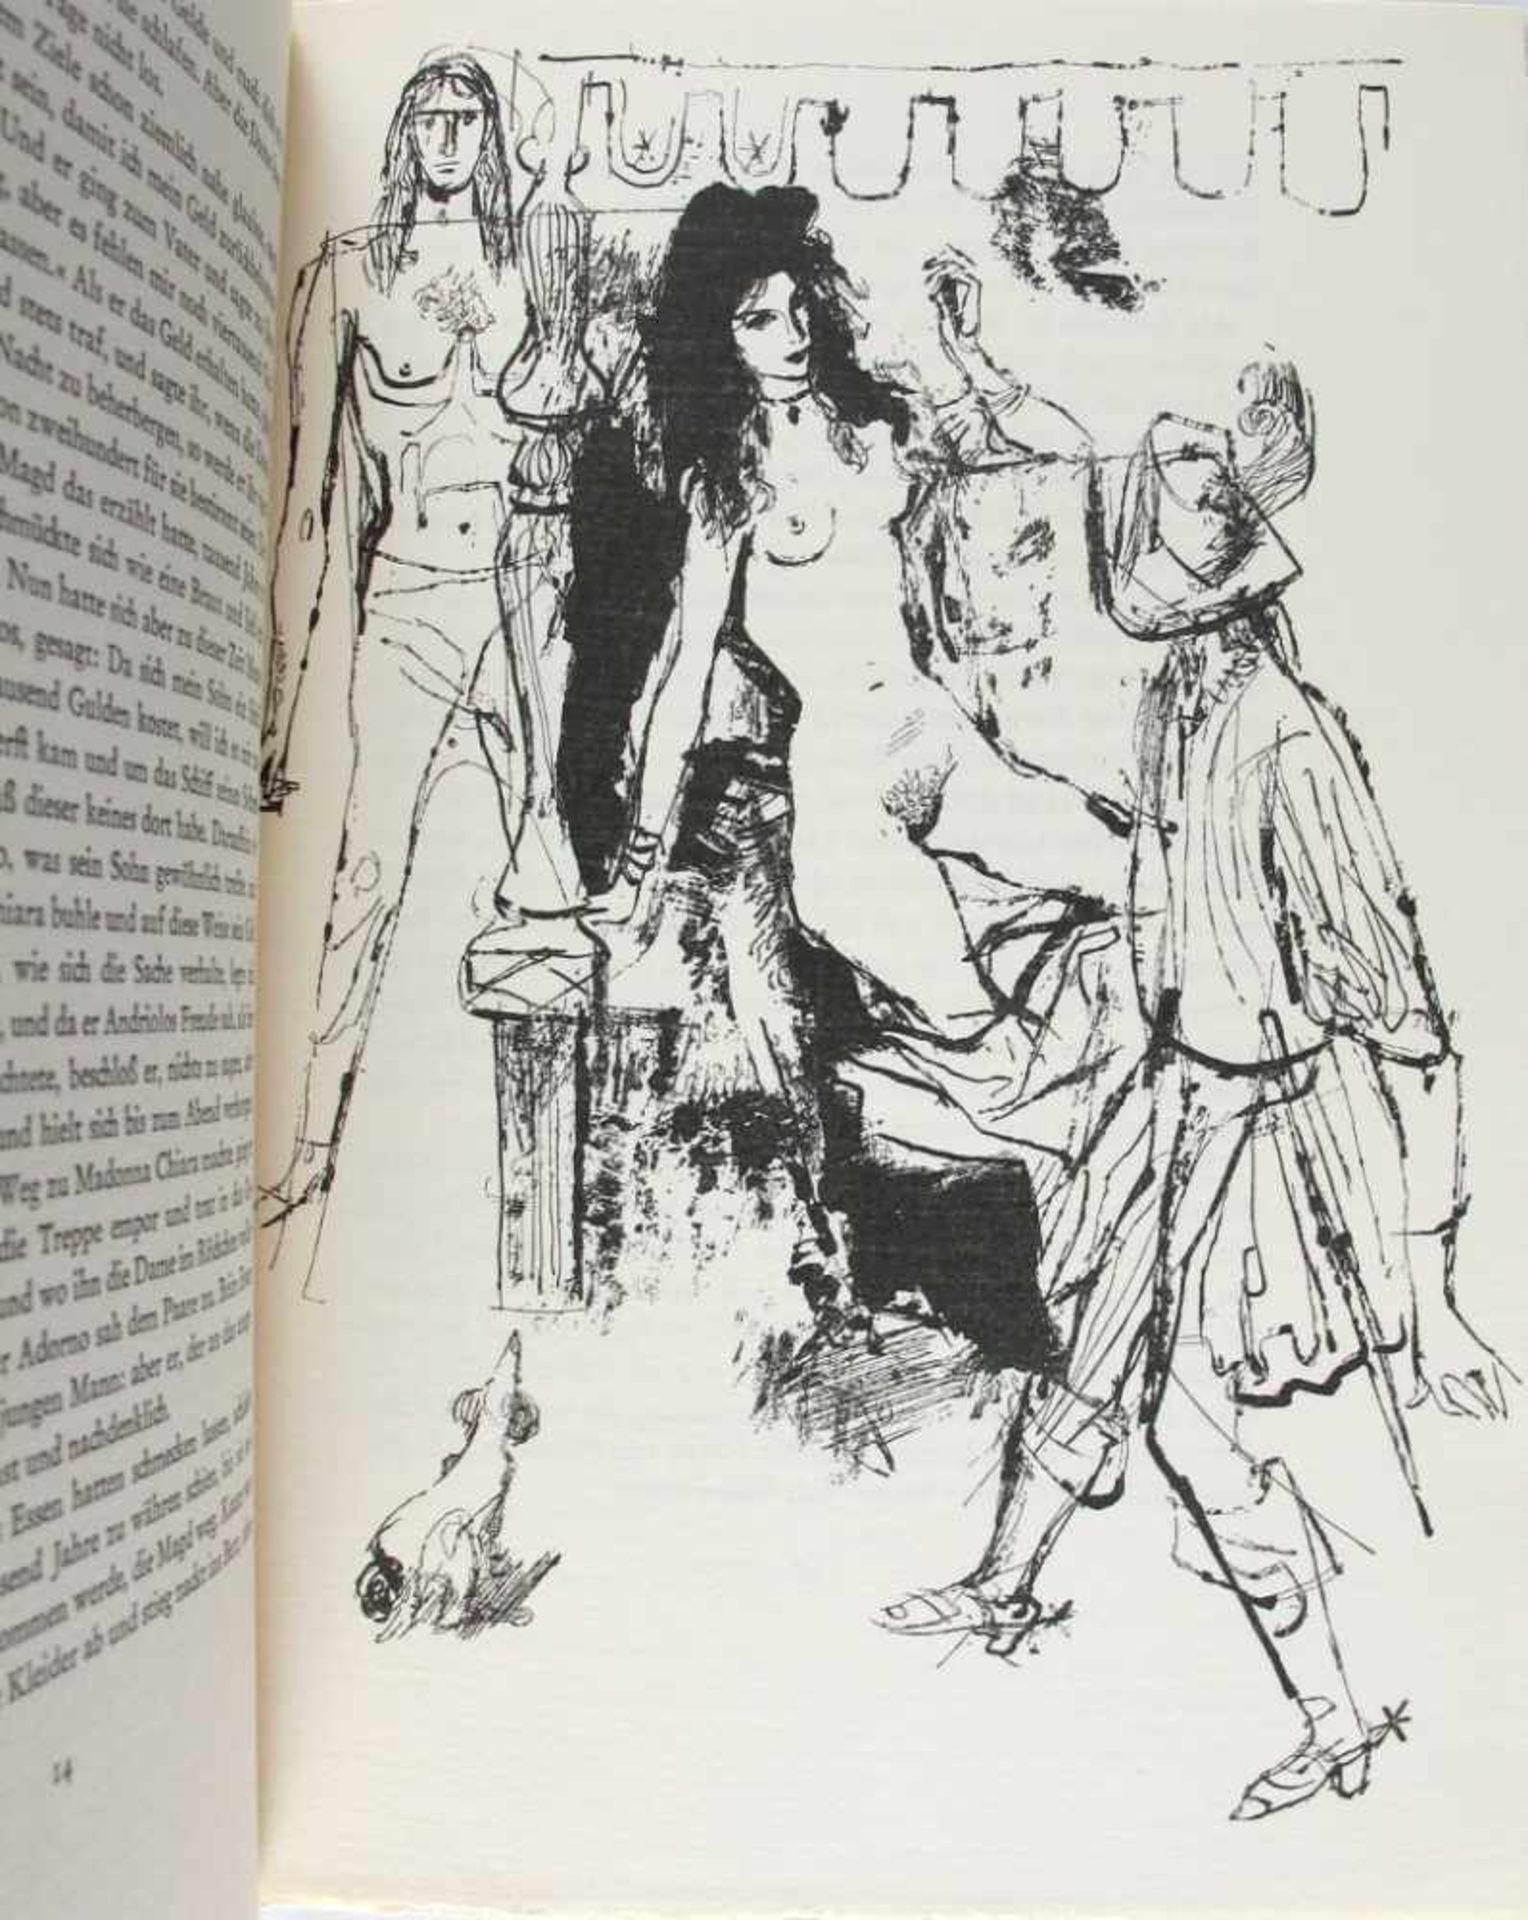 Erotica: Erotische Novellen aus alter Zeit. Illustriert von Otto Cleve. Damen und Dirnen - Kuppler - Bild 2 aus 3